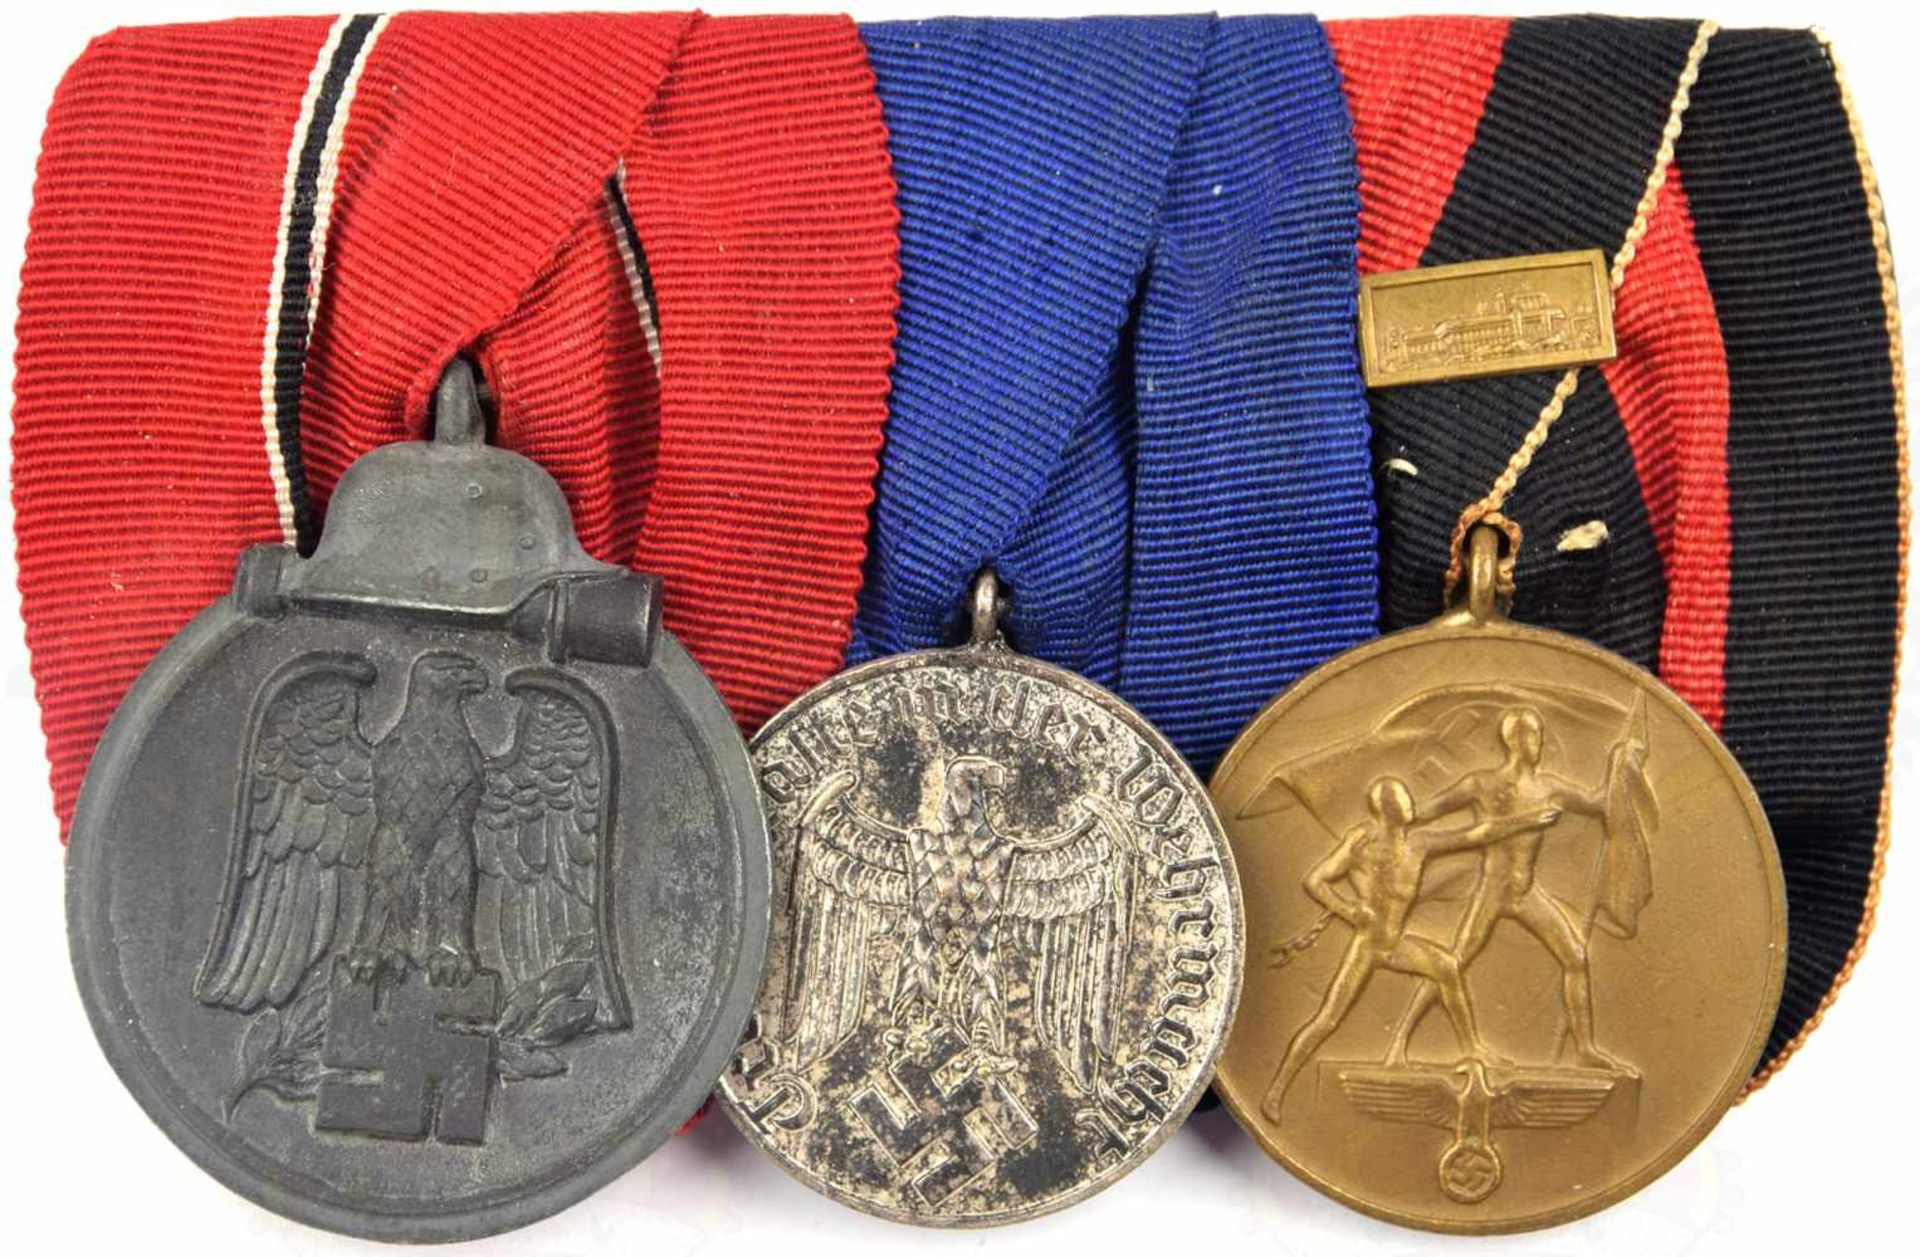 GROSSE ORDENSPANGE, 3-teilig: Medaille Winterschlacht im Osten, Feinzink/patiniert, gedunkelt;